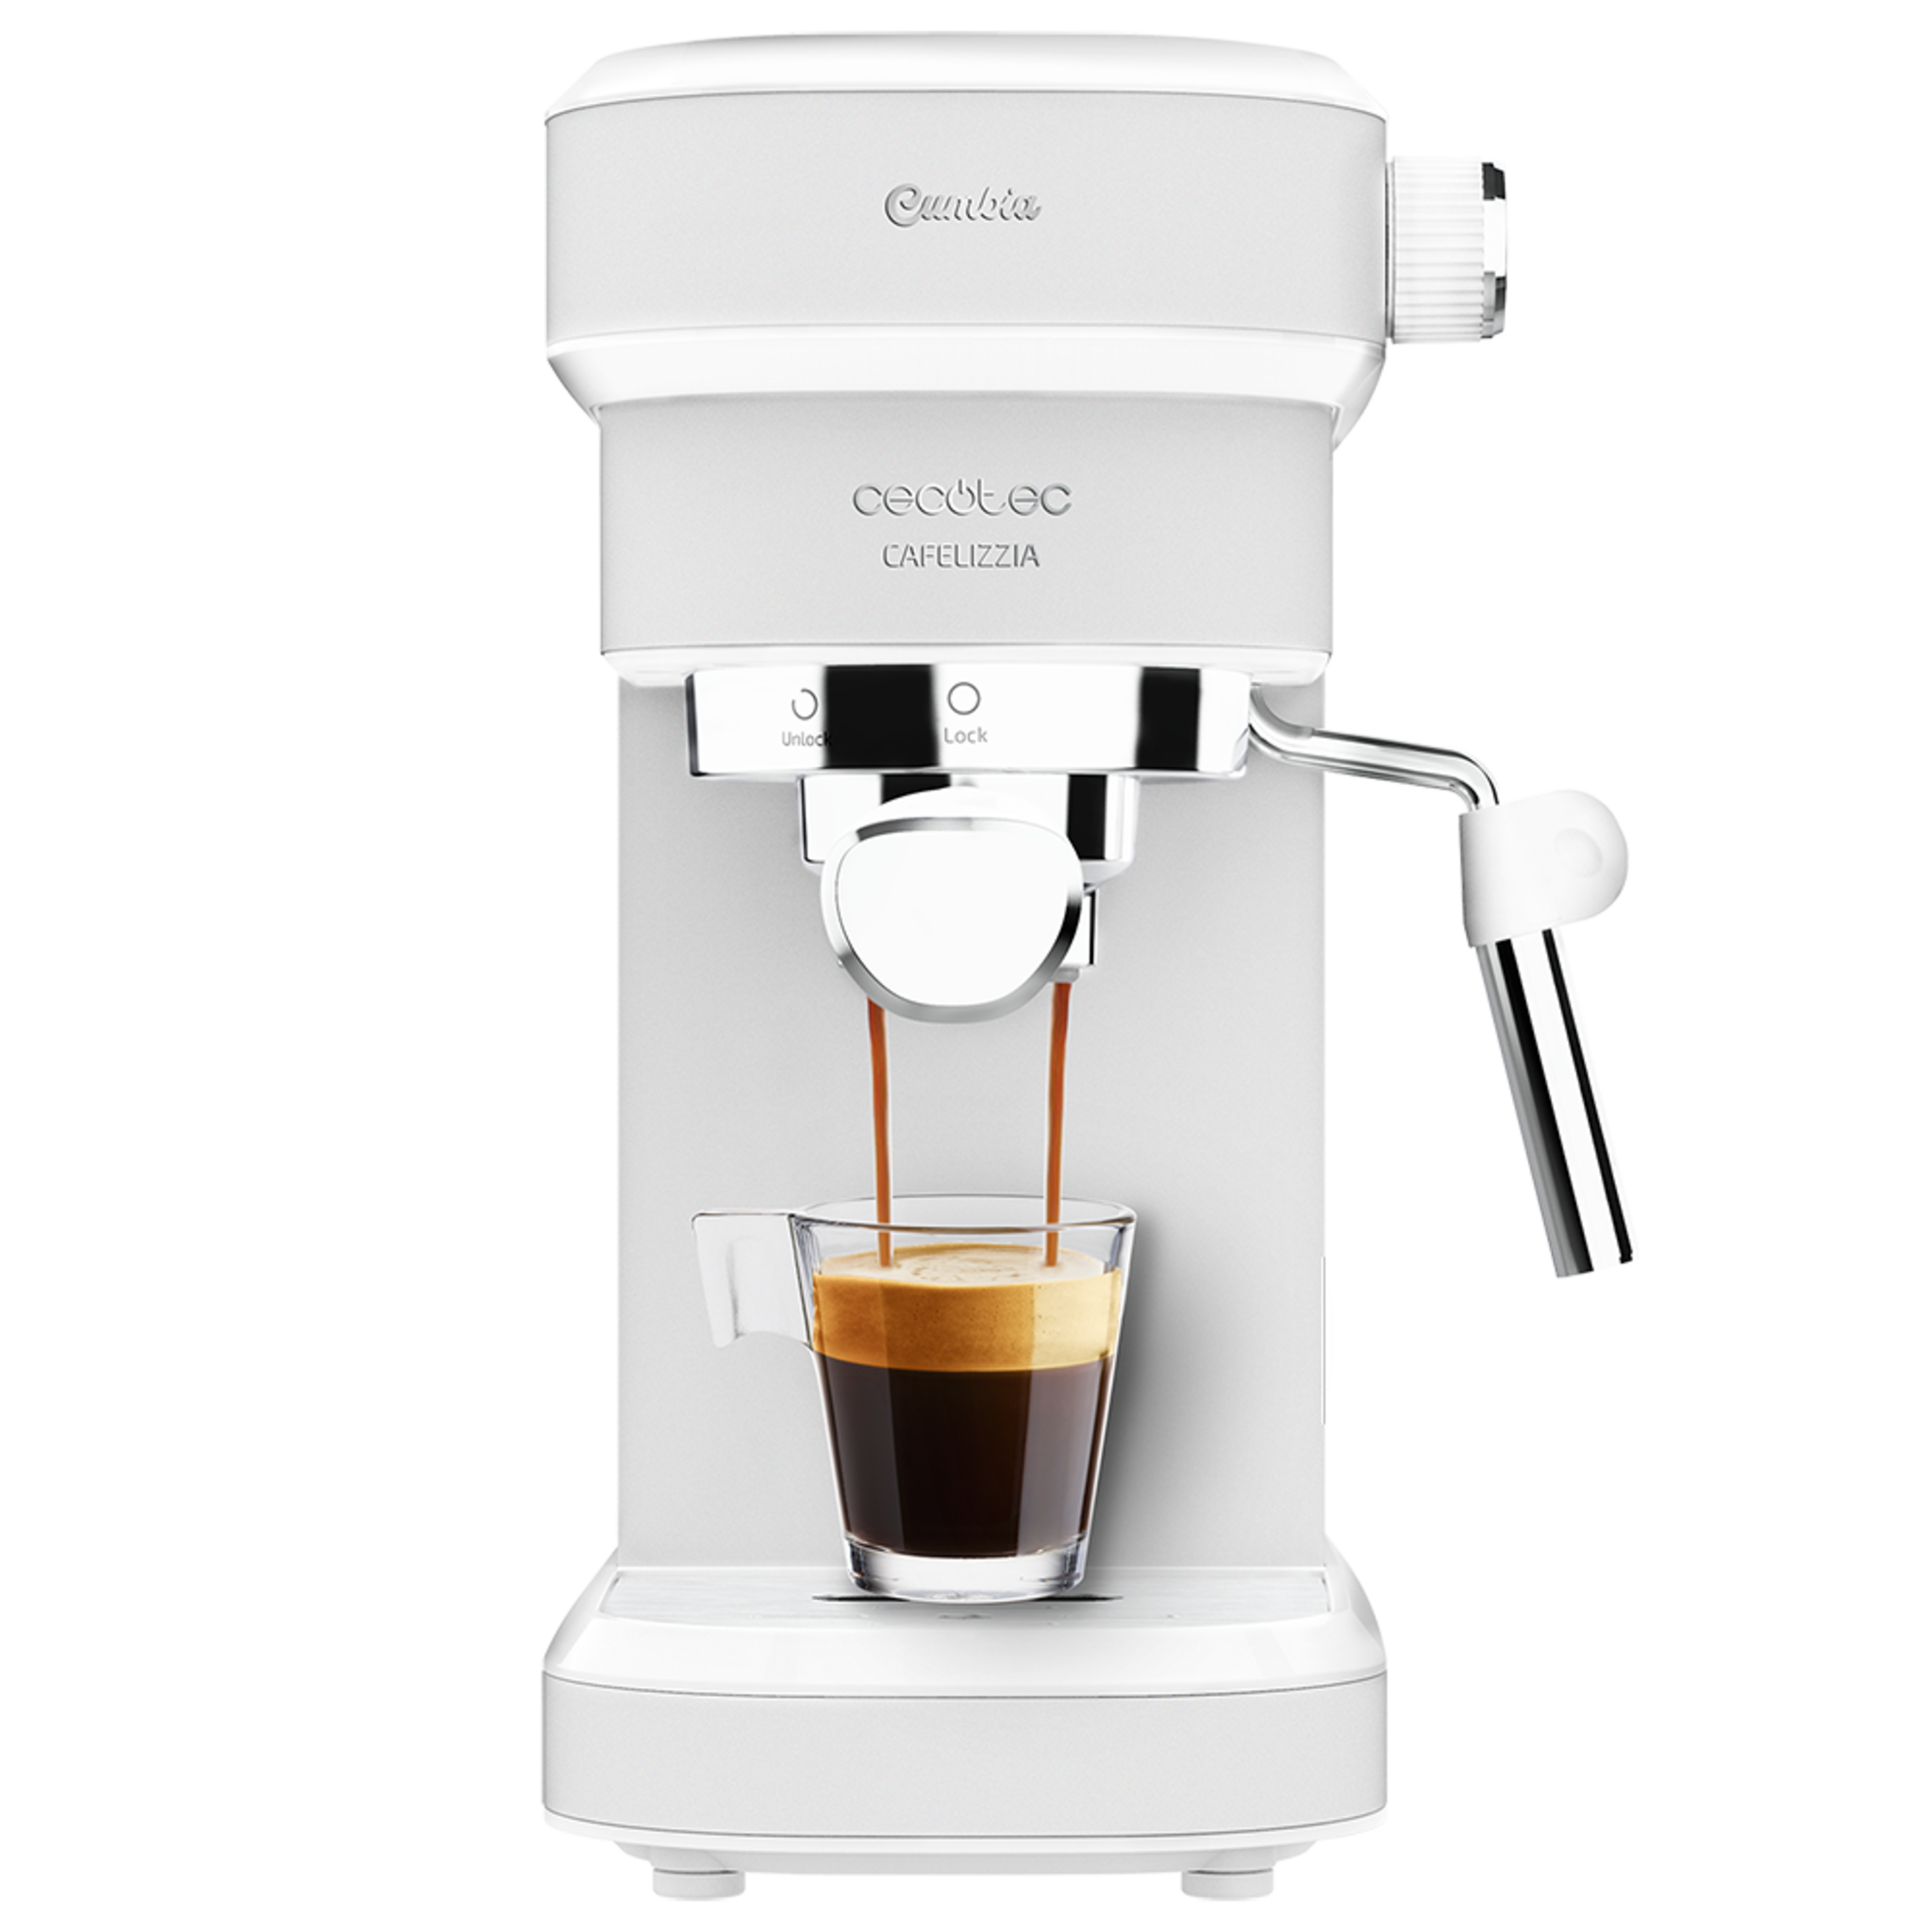 Express-Kaffeemaschine Cafelizzia 790 White. Schnelles Heizsystem, 20 Bar, Auto-Modus für 1 und 2 Kaffees, lenkbarer Dampfgarer, 1,2 Liter Fassungsvermögen.